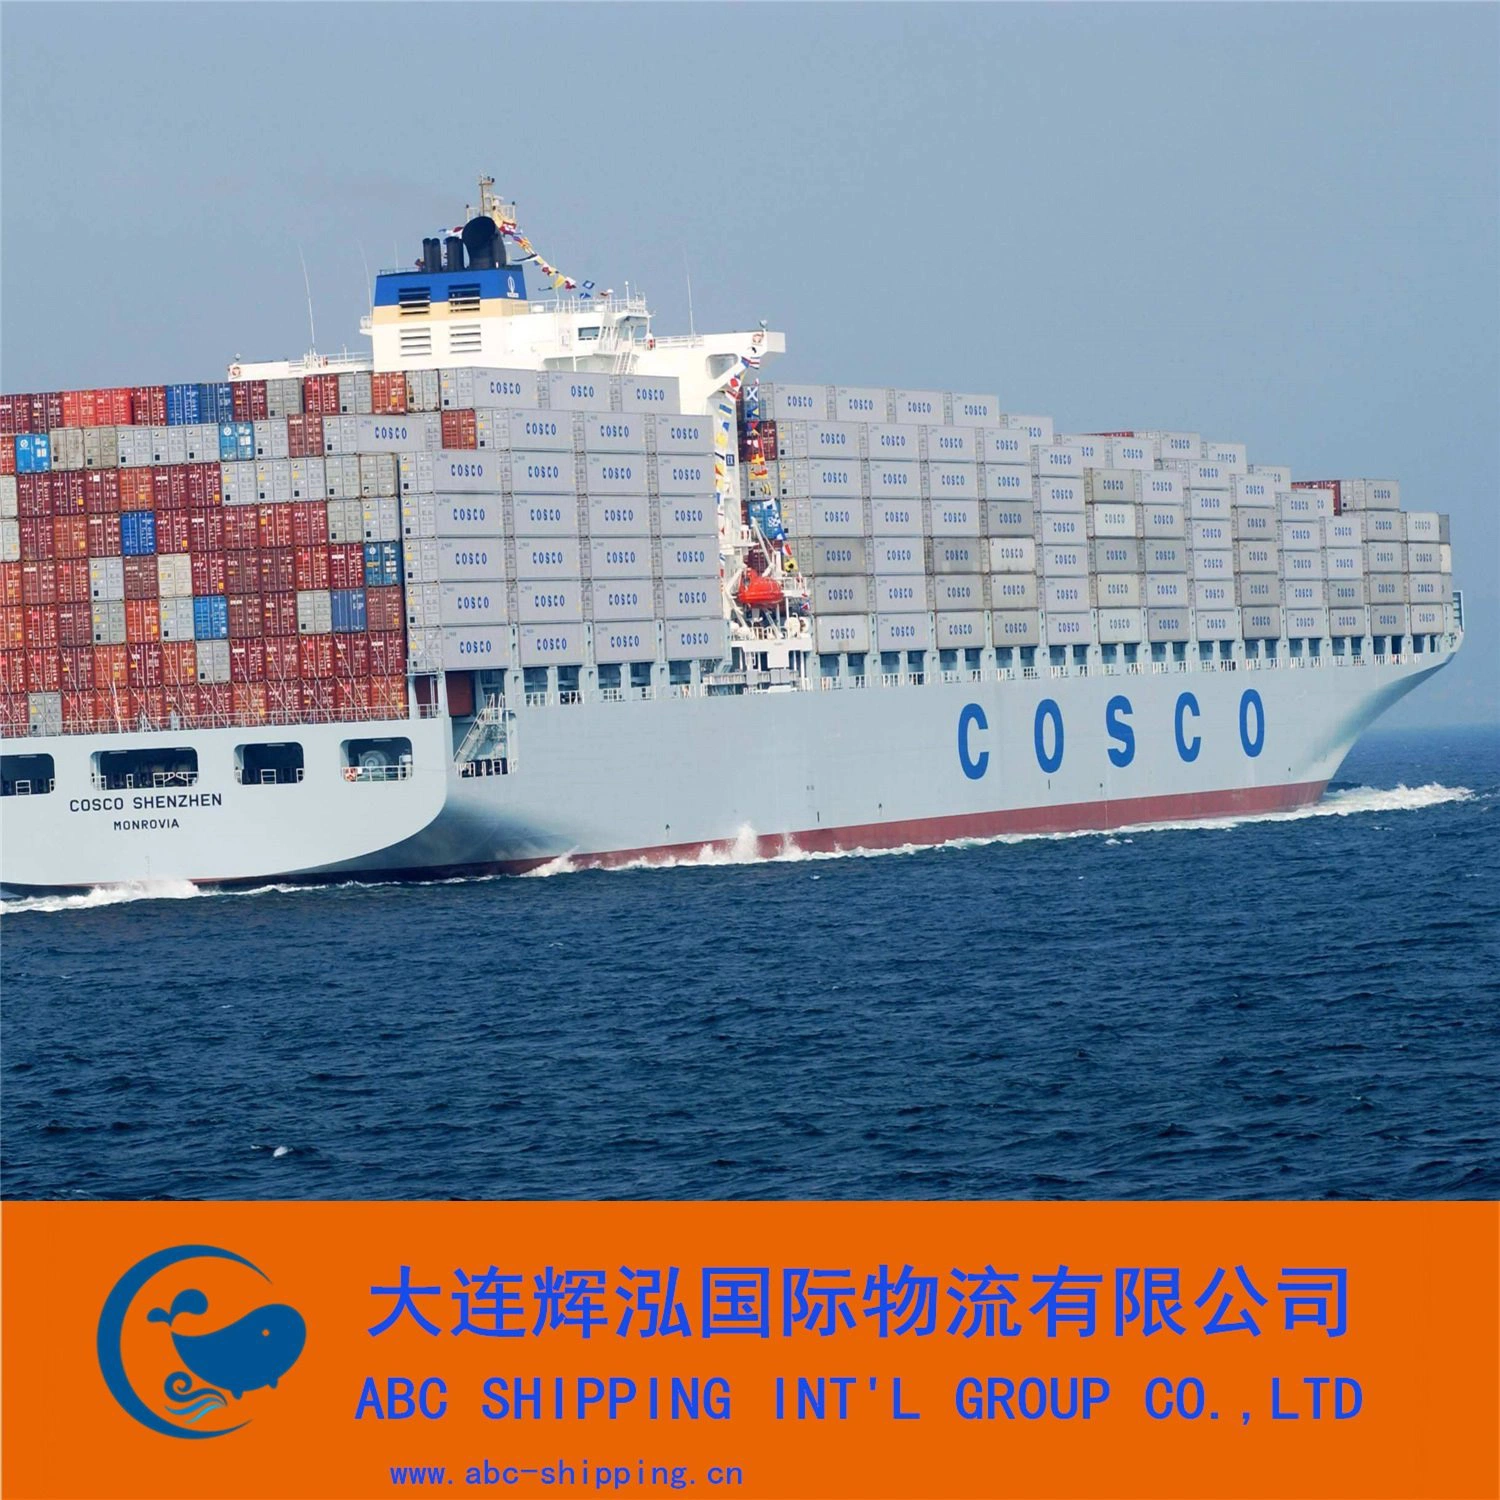 تركز خدمات اللوجستيات الدولية على البضائع البحرية.